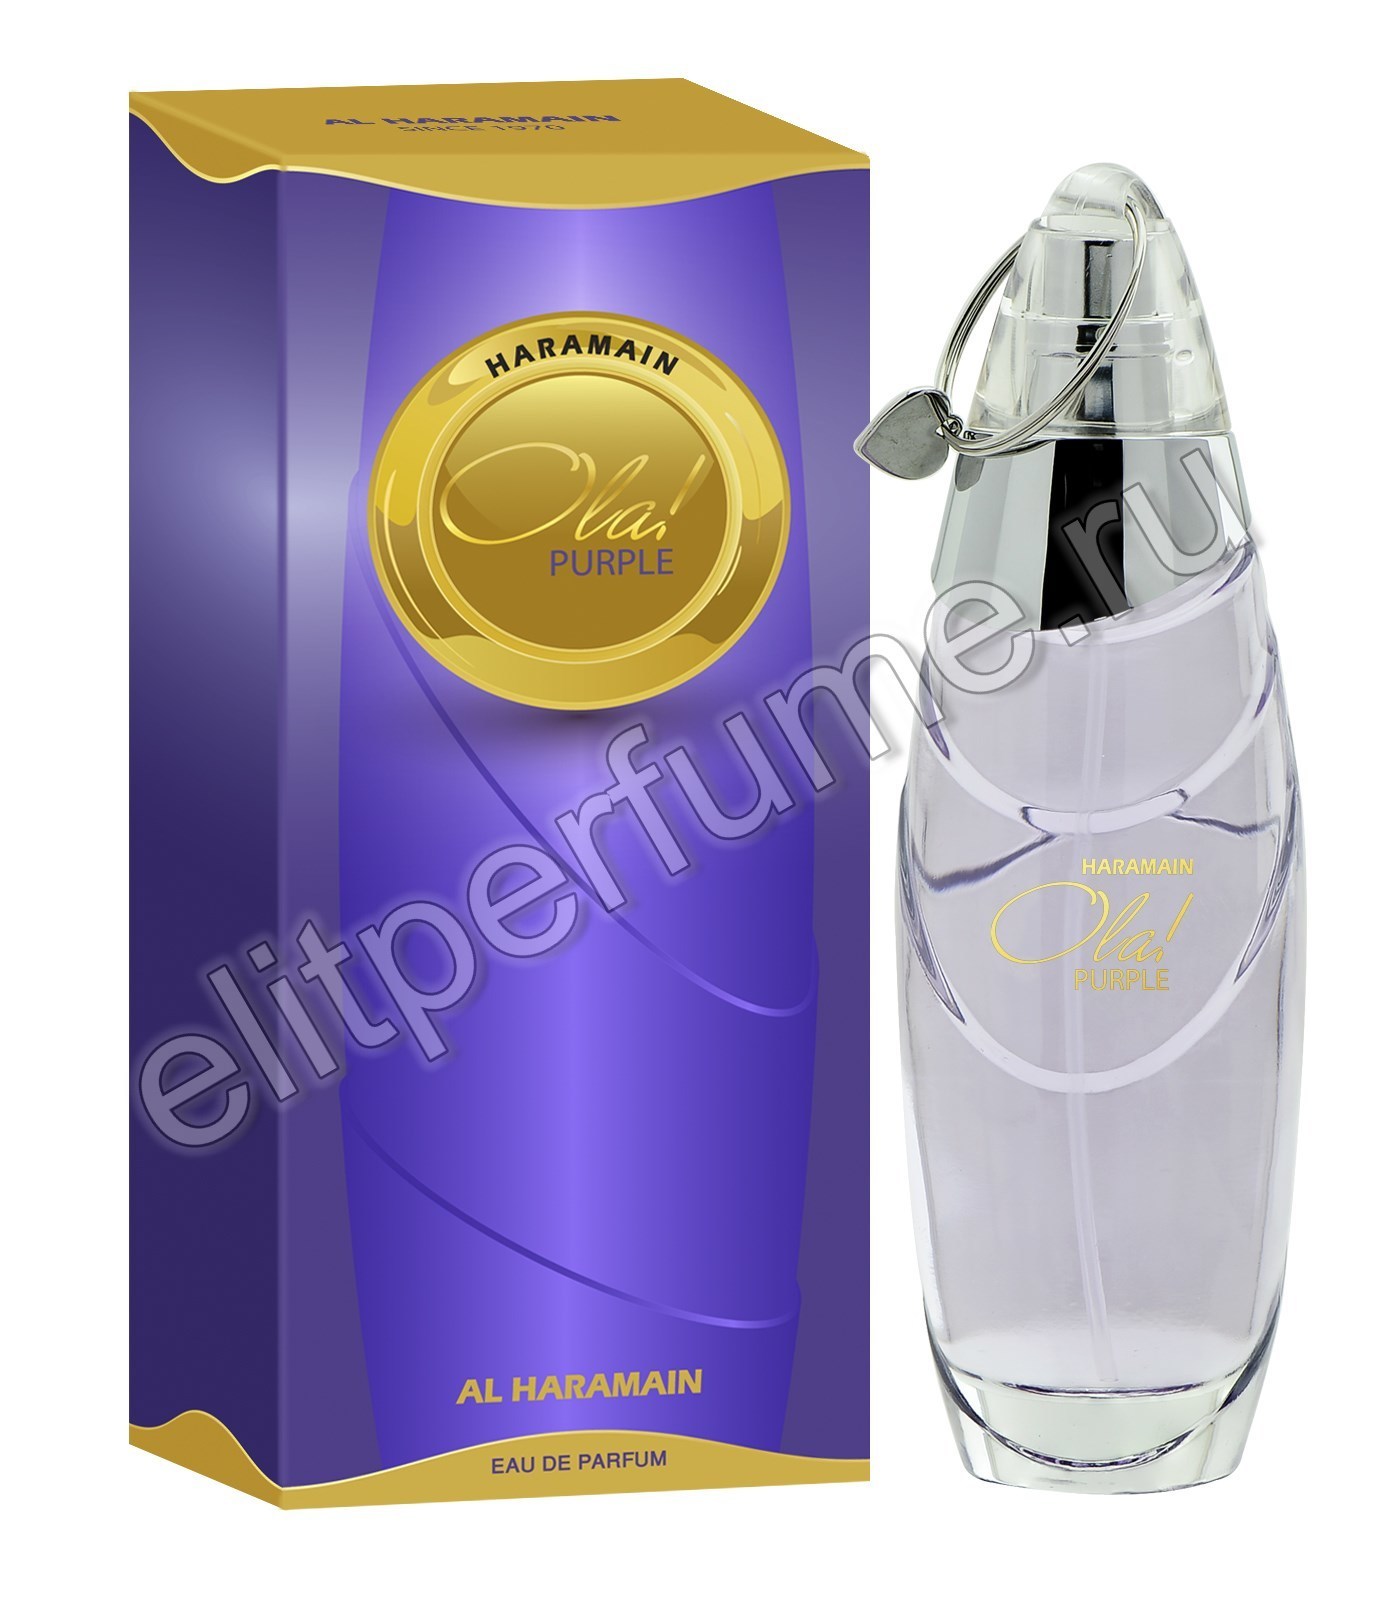 Пробники для Haramain Ola Purple  Харамайн Ола Фиолетовый 1 мл спрей от Аль Харамайн Al Haramain Perfumes